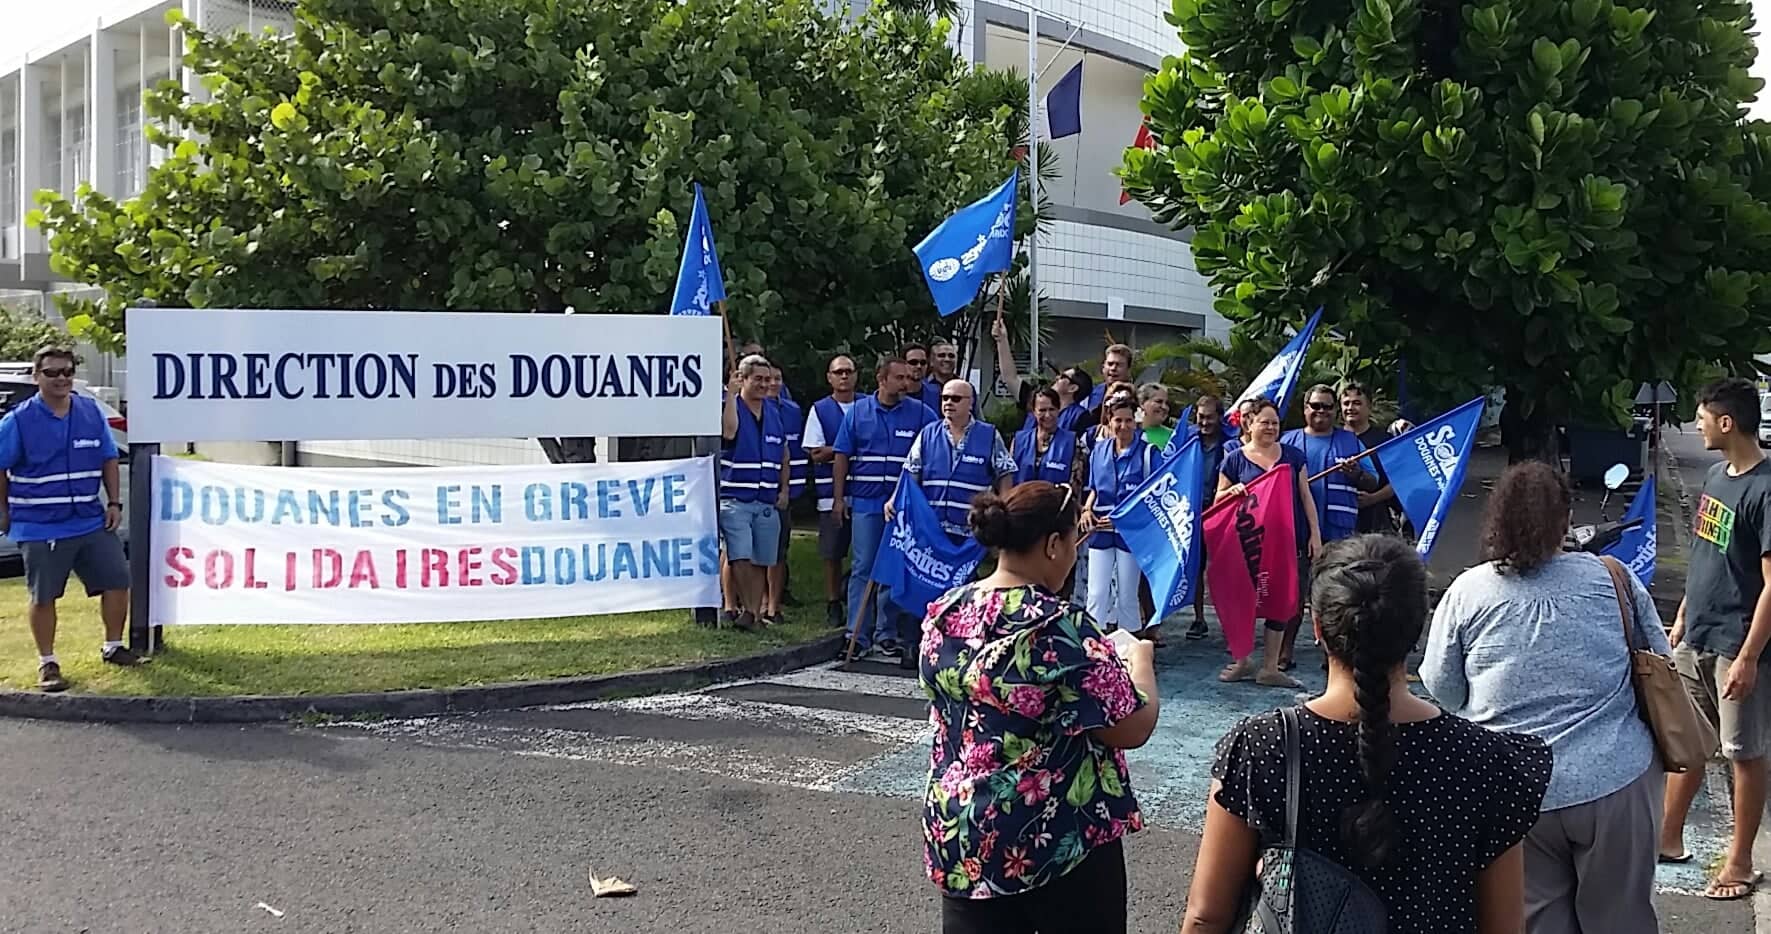 L'un des principaux "dysfonctionnements" pointé du doigt par les grévistes est l'ouverture du tableau annuel de mutation en catégorie B et C des agents nationaux vers la Polynésie. "Nous n'en voulons pas", s'exclame Tiaitau Ropati, secrétaire du syndicat Solidaires douanes de Polynésie française.